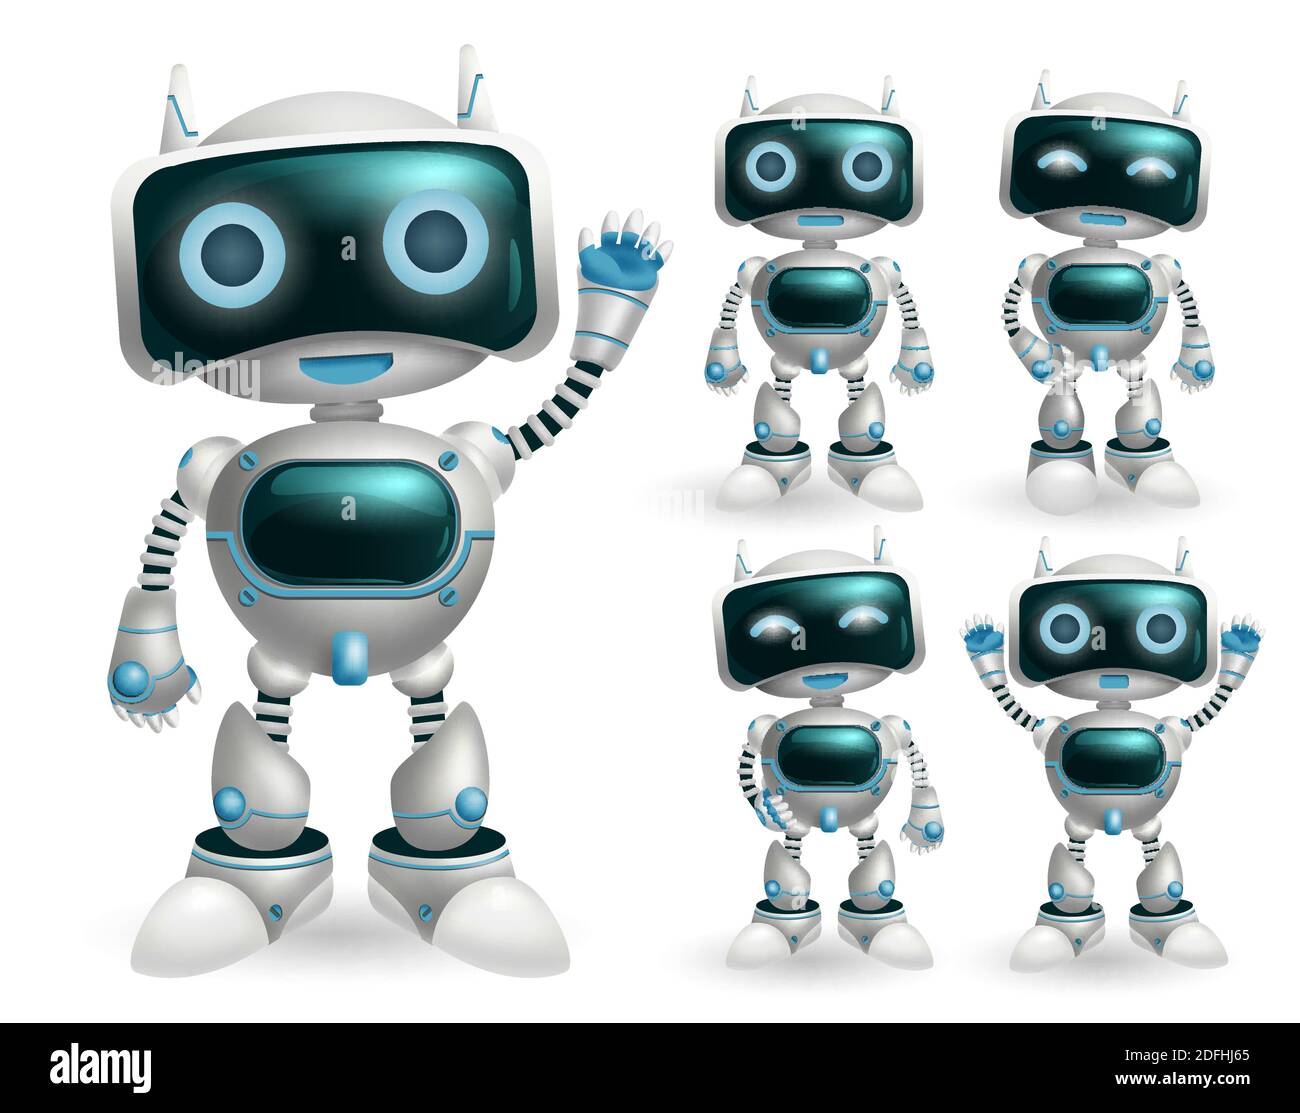 Jeu de caractères vecteur robot. Personnages robotisés en position debout  et des gestes dans le design moderne pour les robots jouets jeu de la  collection de dessins animés Image Vectorielle Stock -